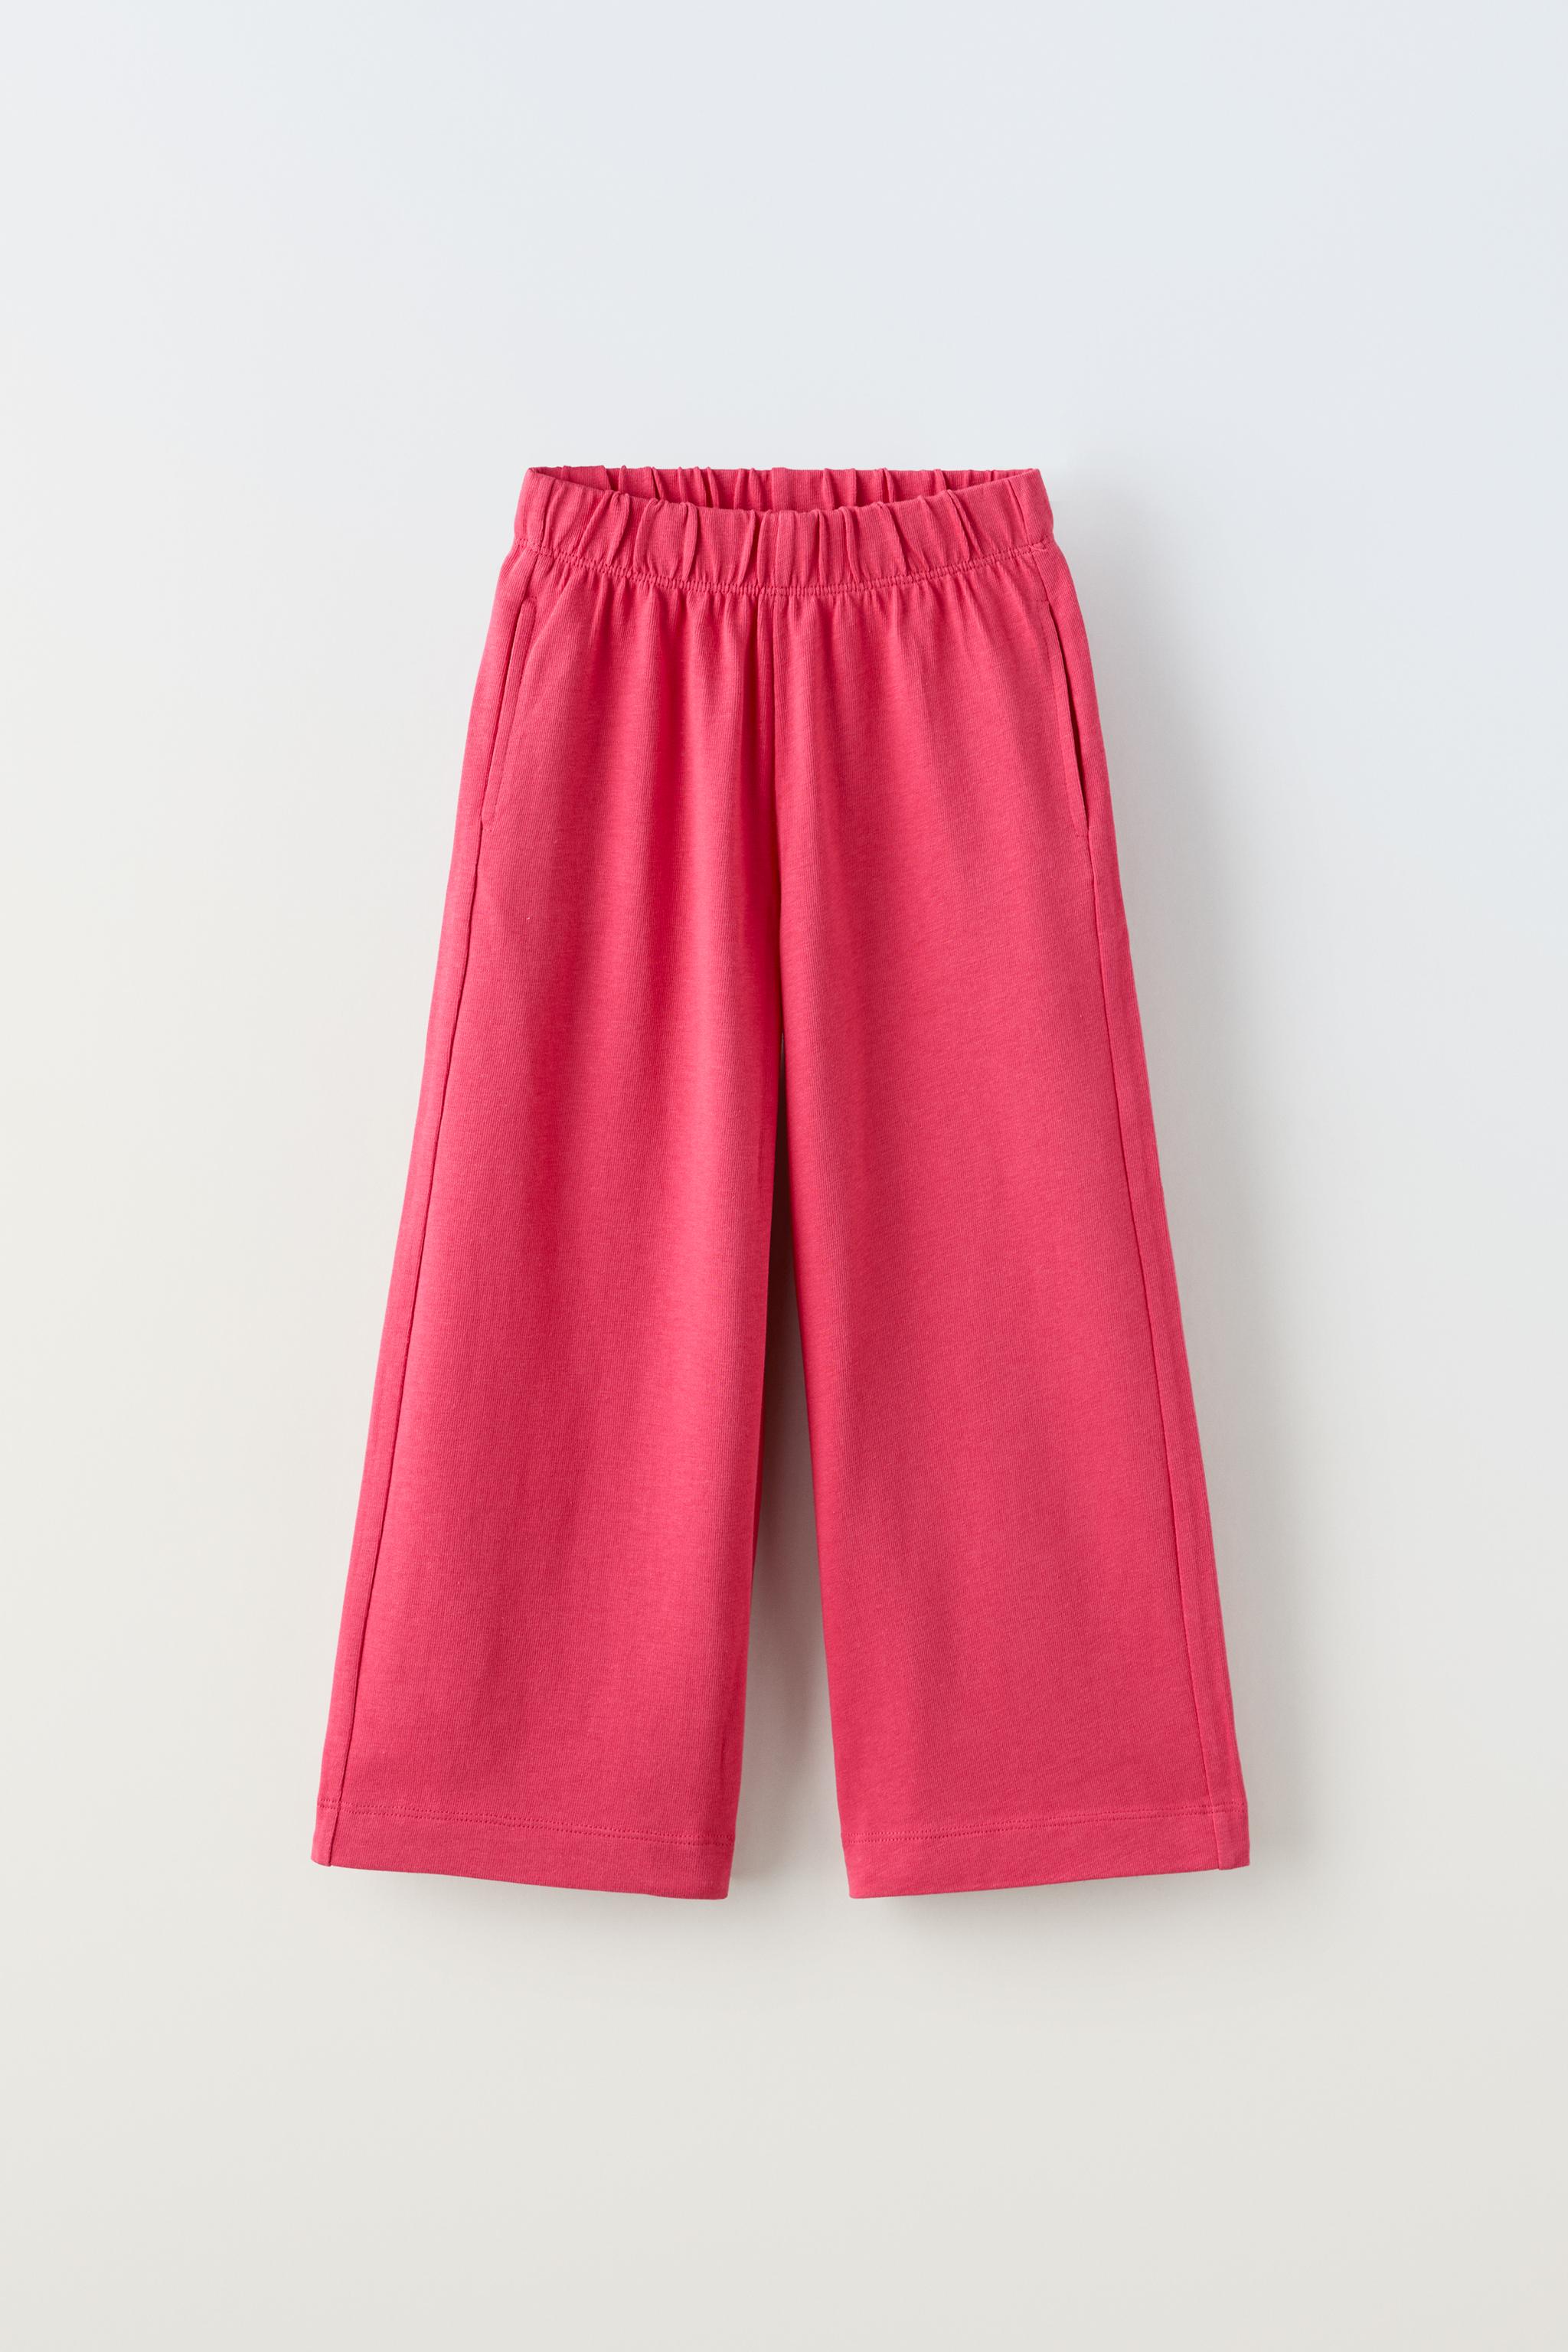 Polyester Palazzo Pants Cutiekins Girls Printed Trousers, Size: 4